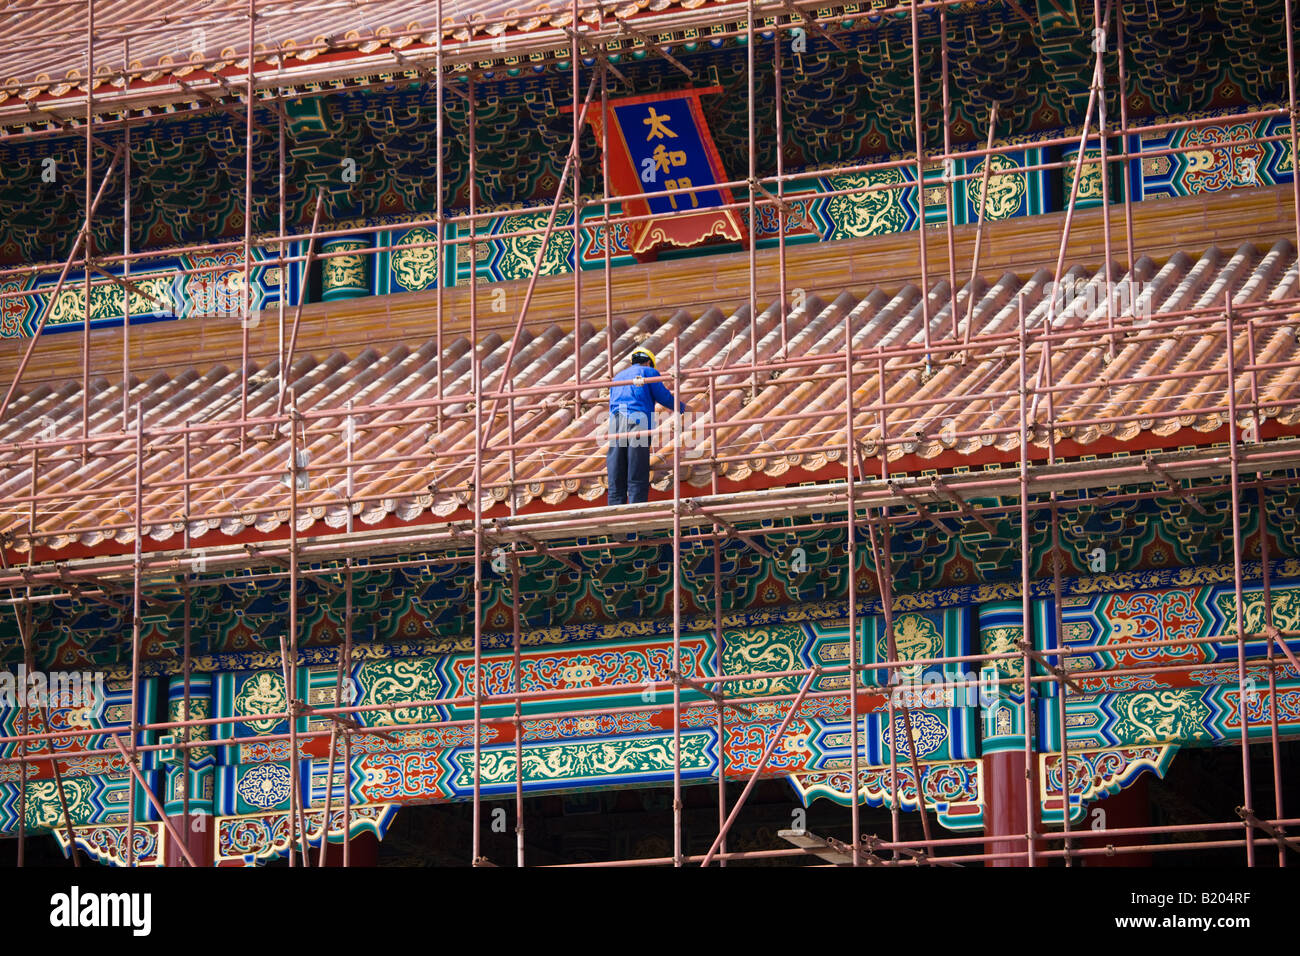 Travaux de rénovation de la porte de l'harmonie suprême dans le Palais impérial de la Cité Interdite Pékin Chine Banque D'Images